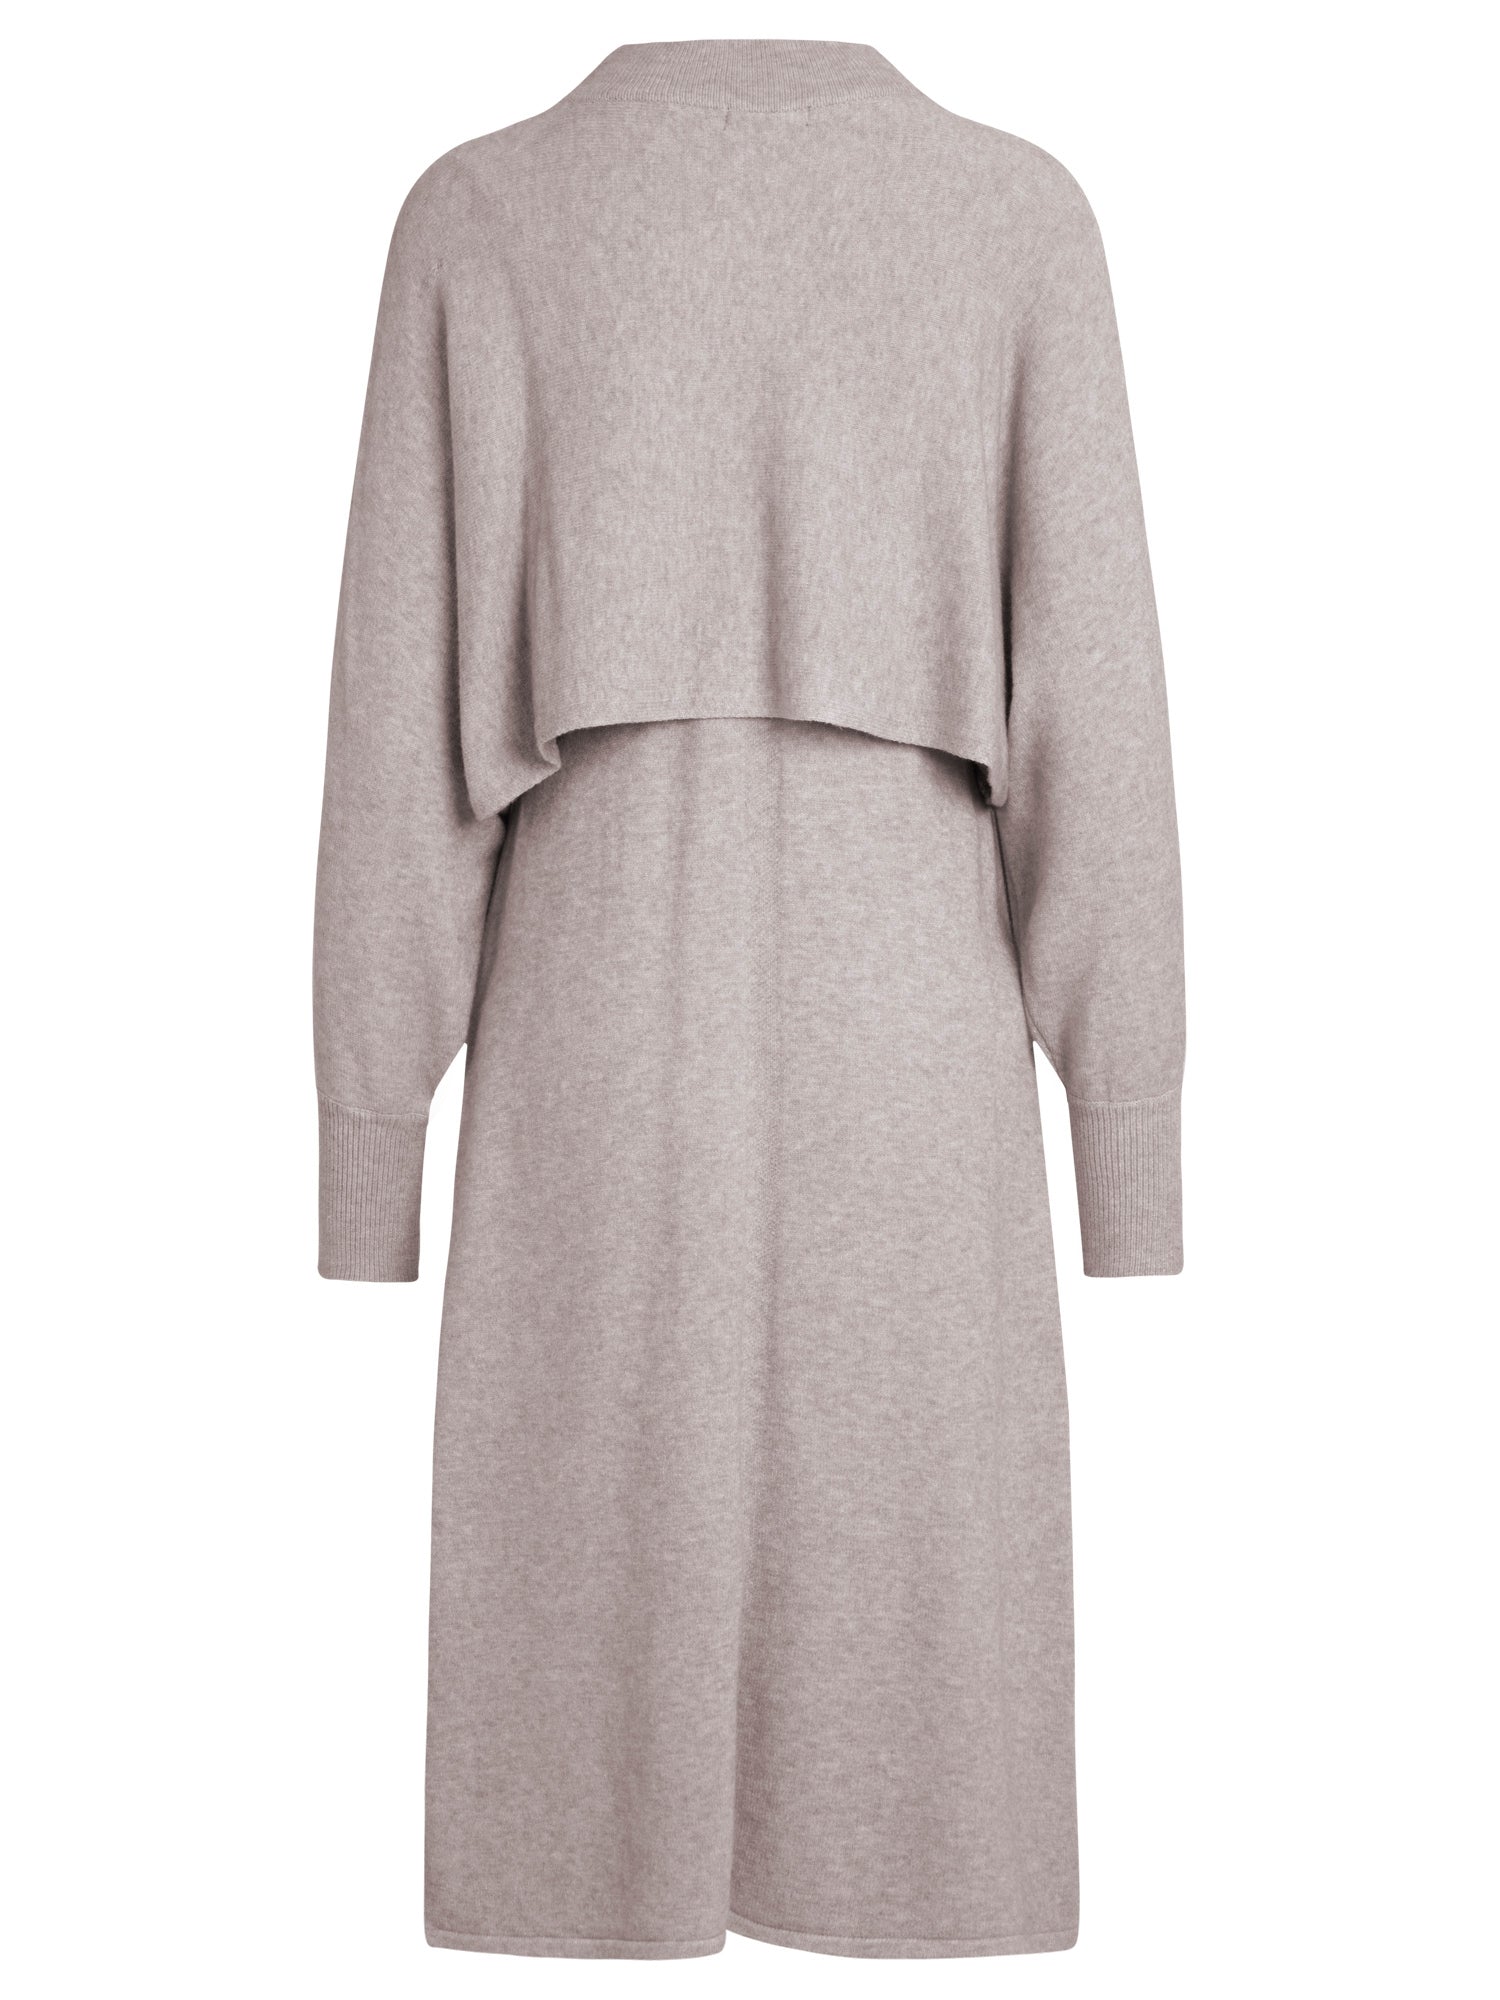 APART trendiges Kleid, Strickkleid, 2-in-1-Look, Oberteil in Cape-Optik, seitlich geschlit | taupe